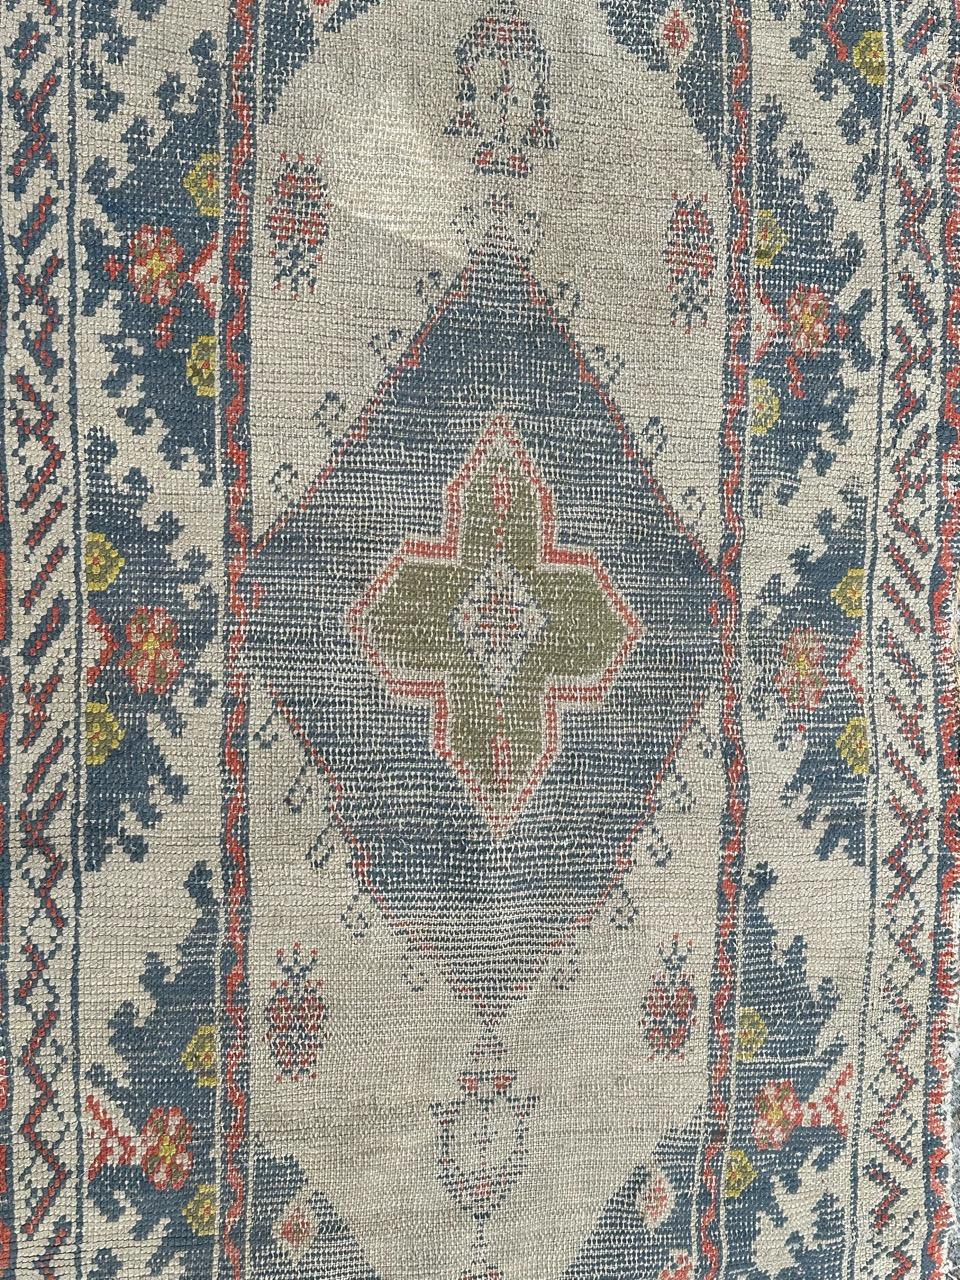 Joli petit tapis oushak turc ancien, avec un design décoratif et de belles couleurs claires avec du blanc sur le fond, du bleu, du vert, du jaune, du rose et du rouge, entièrement noué à la main avec de la laine sur une base en coton.